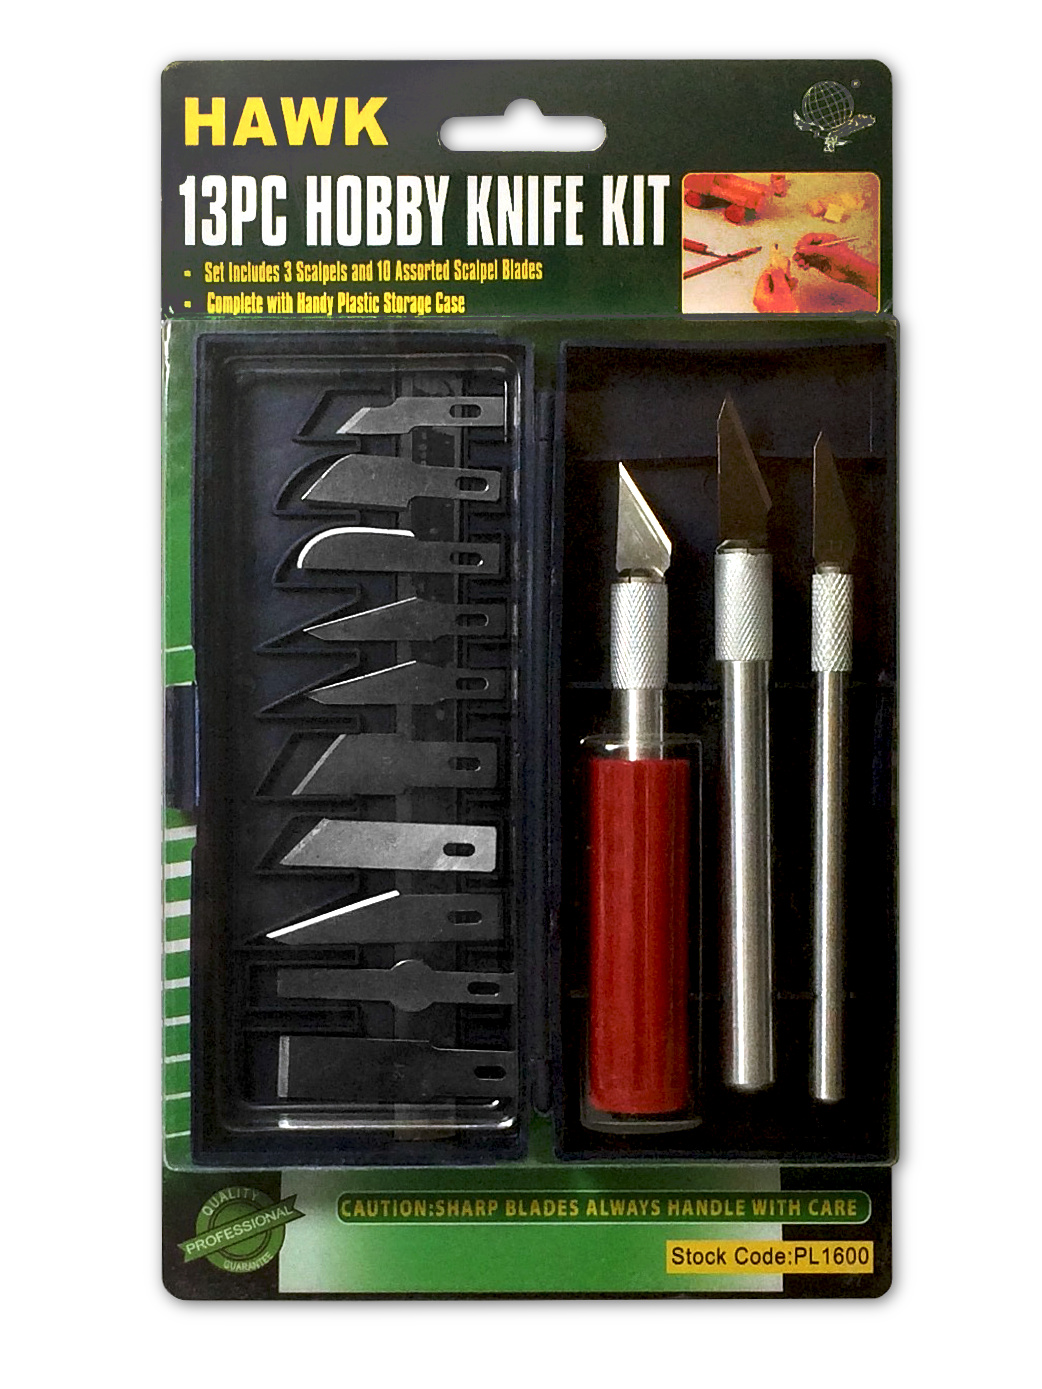 13 pc Hobby Knife Kit